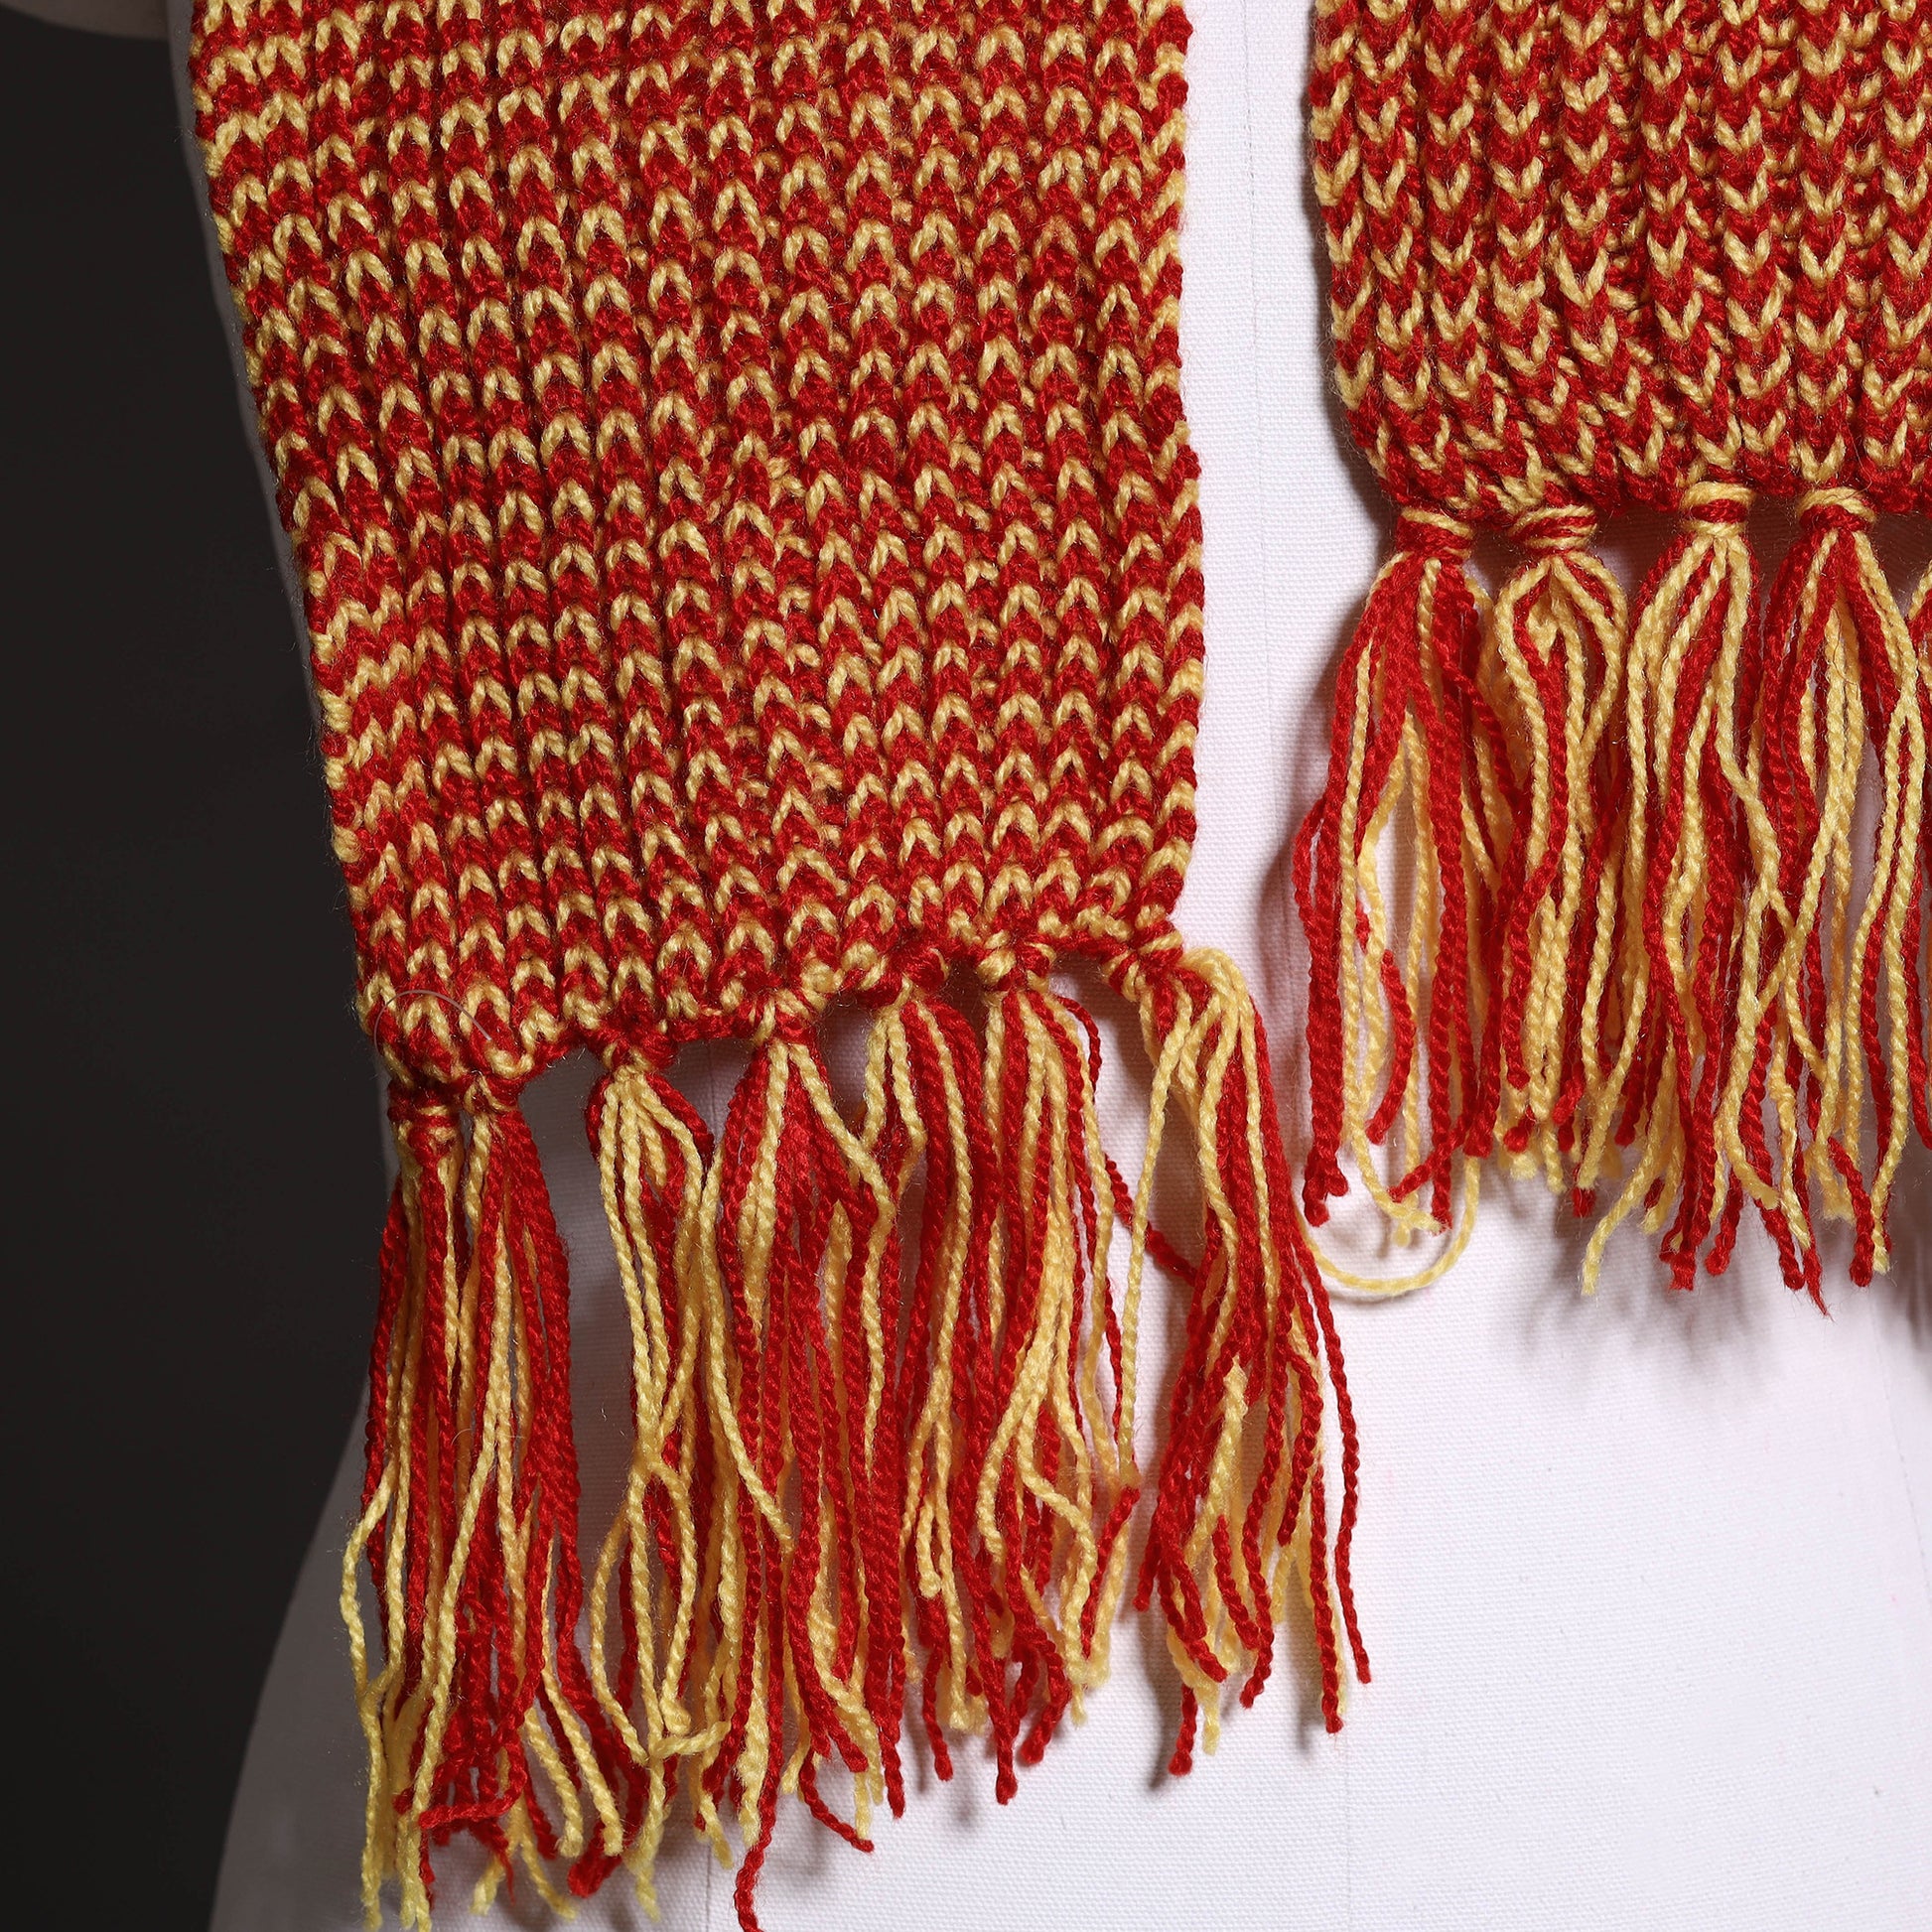 hand knitted woolen muffler